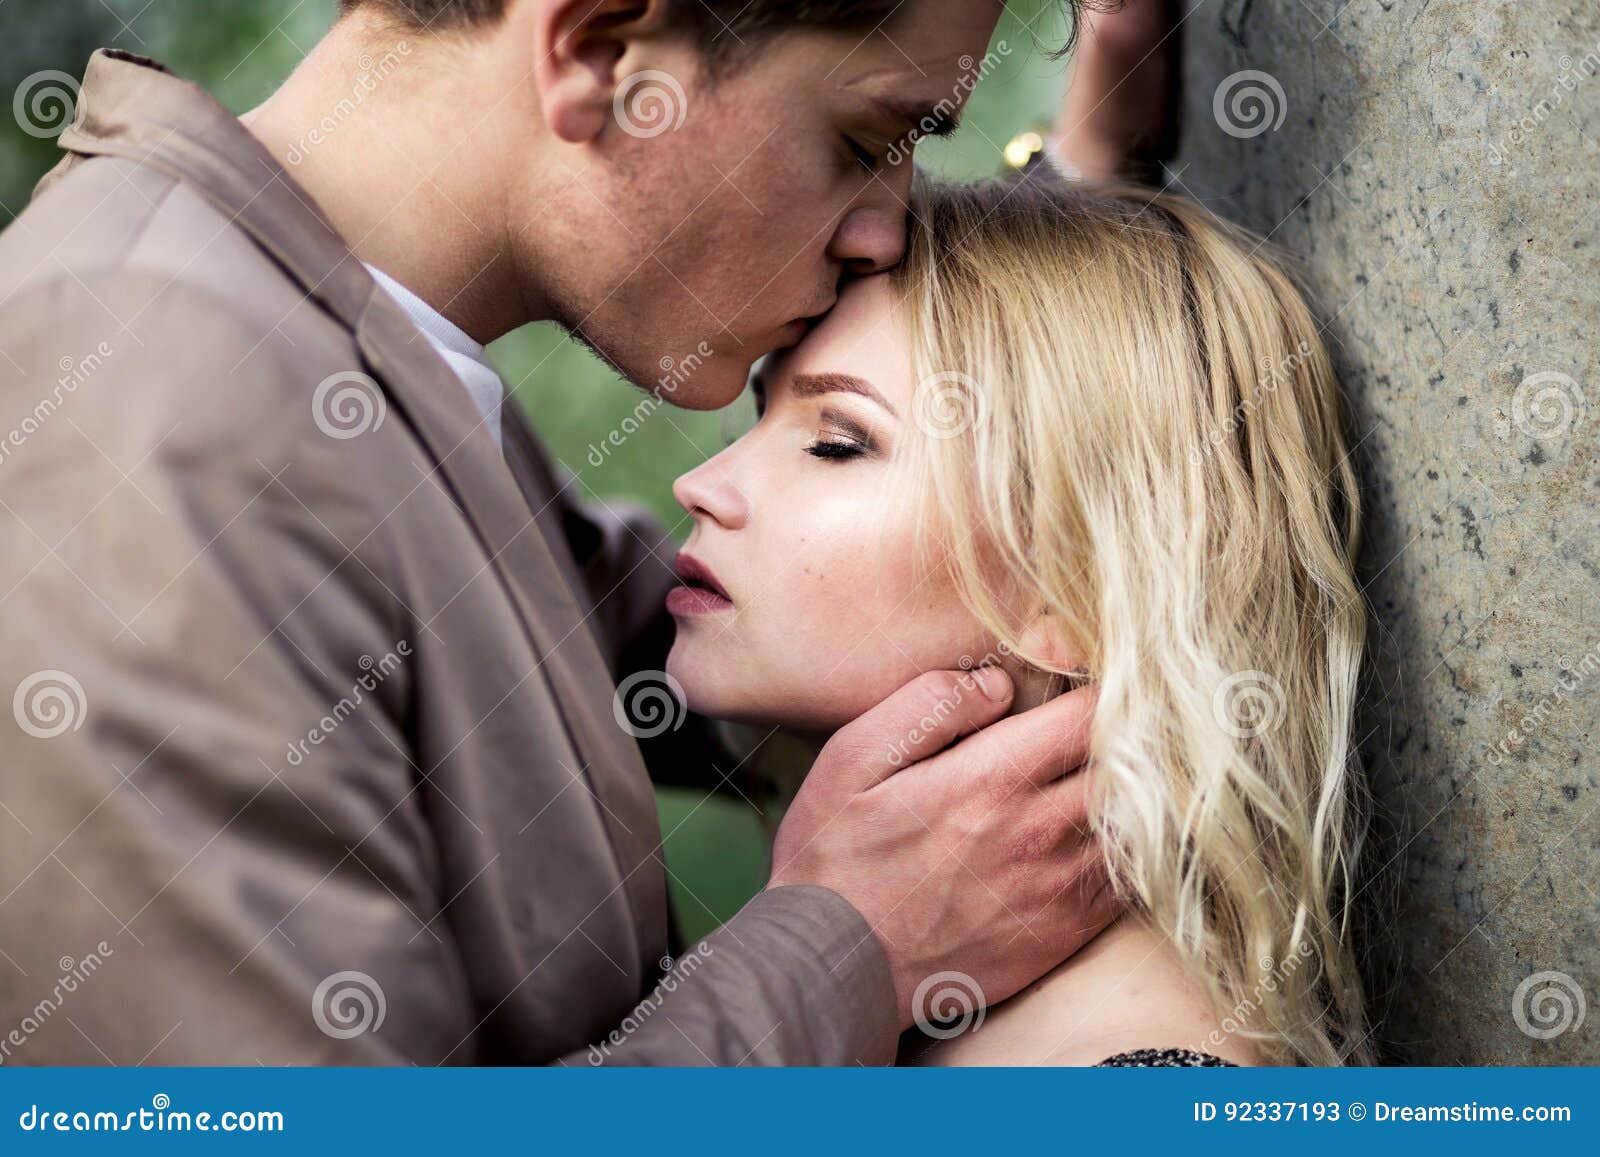 Человек целует в лоб. Поцелуй в лоб. Человек целует другого в лоб. Мужчина целует женщину в лоб. Женщина целует женщину в лоб.